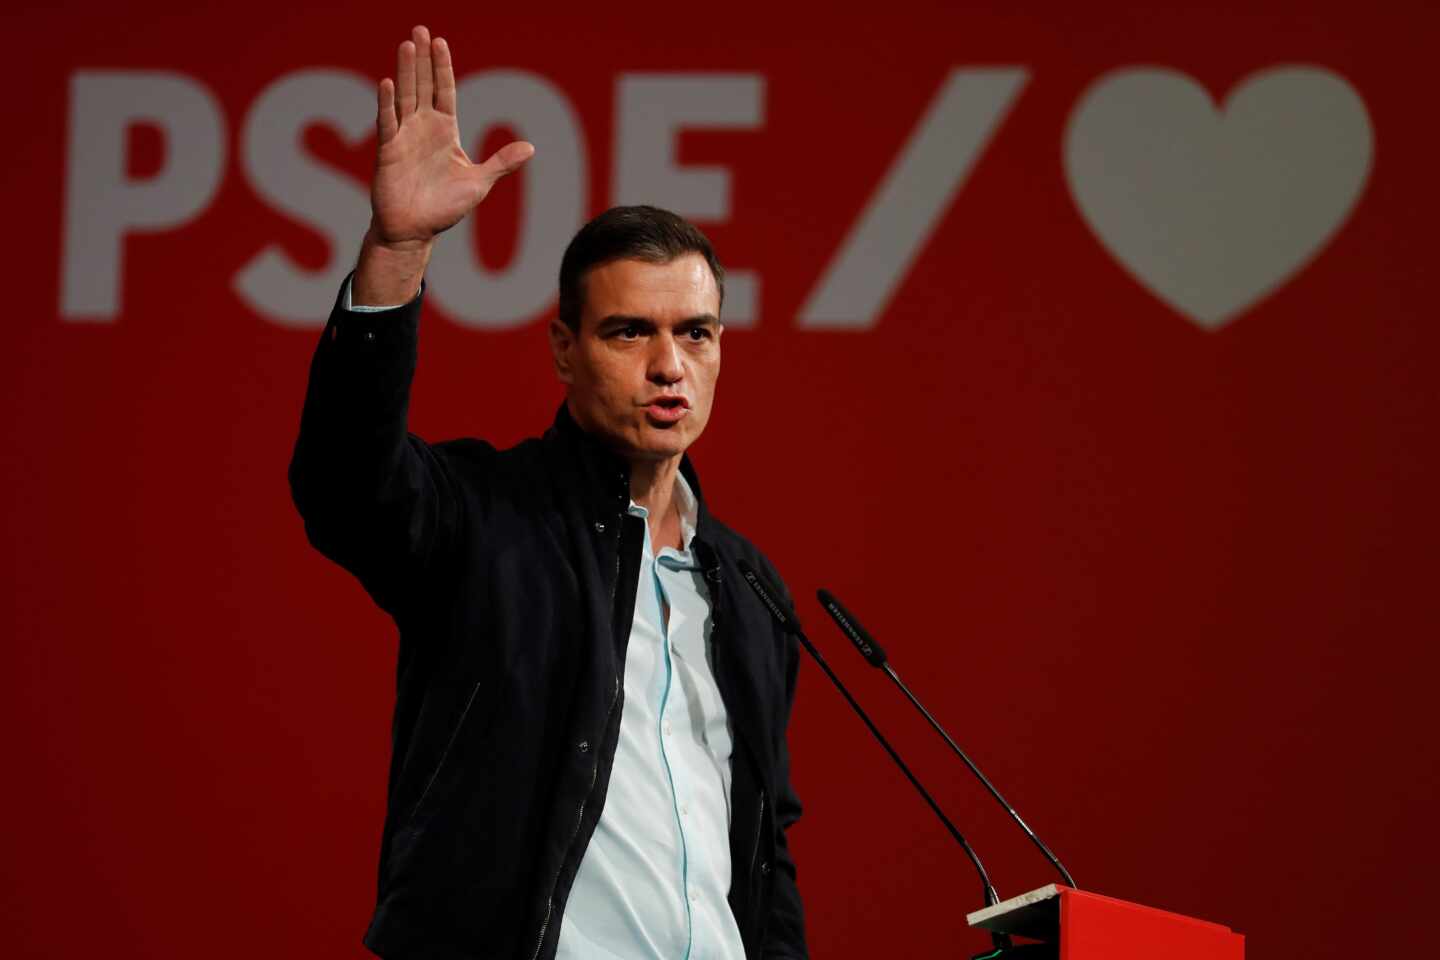 La exhumación de Franco no impulsa al PSOE y la derecha sigue creciendo en las encuestas